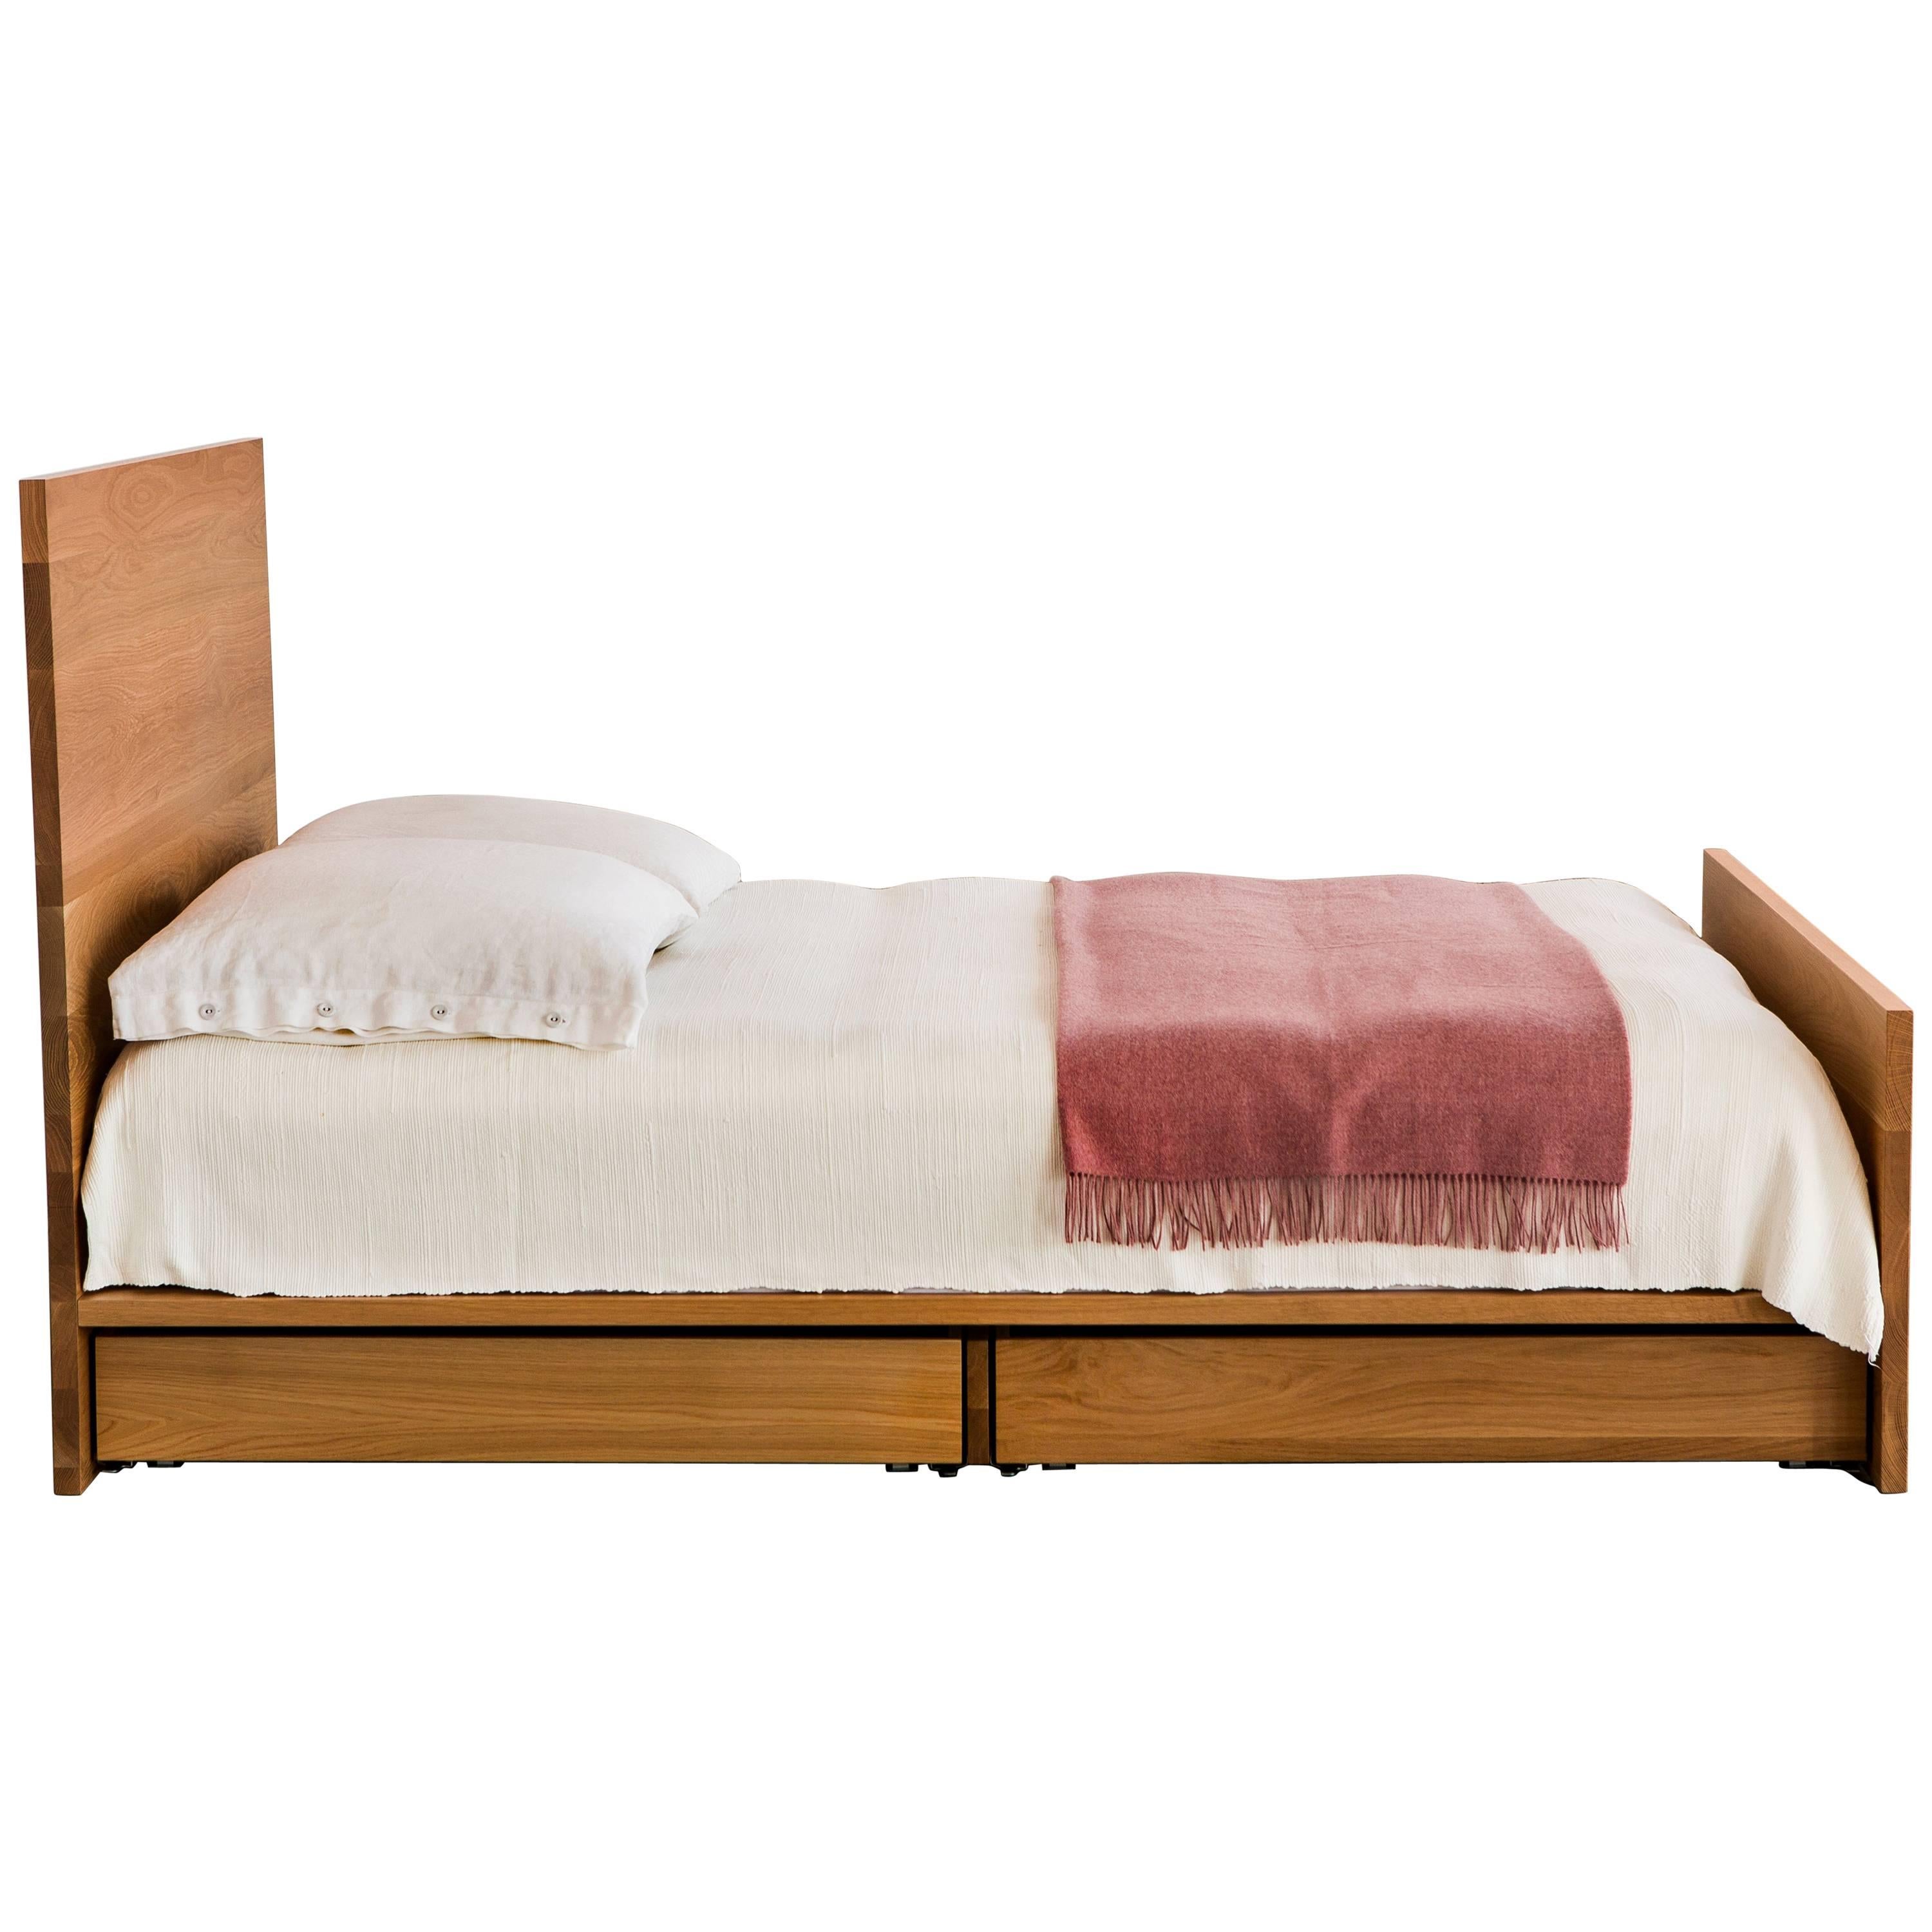 Das AB6-Bett, ein dezentes Plattformbett, bietet diskreten Stauraum unter (optional) einer eleganten Fläche aus massivem Hartholz. 

Abgebildet in massiver Weißeiche mit Bronze-Akzenten. 

Abmessungen: 60